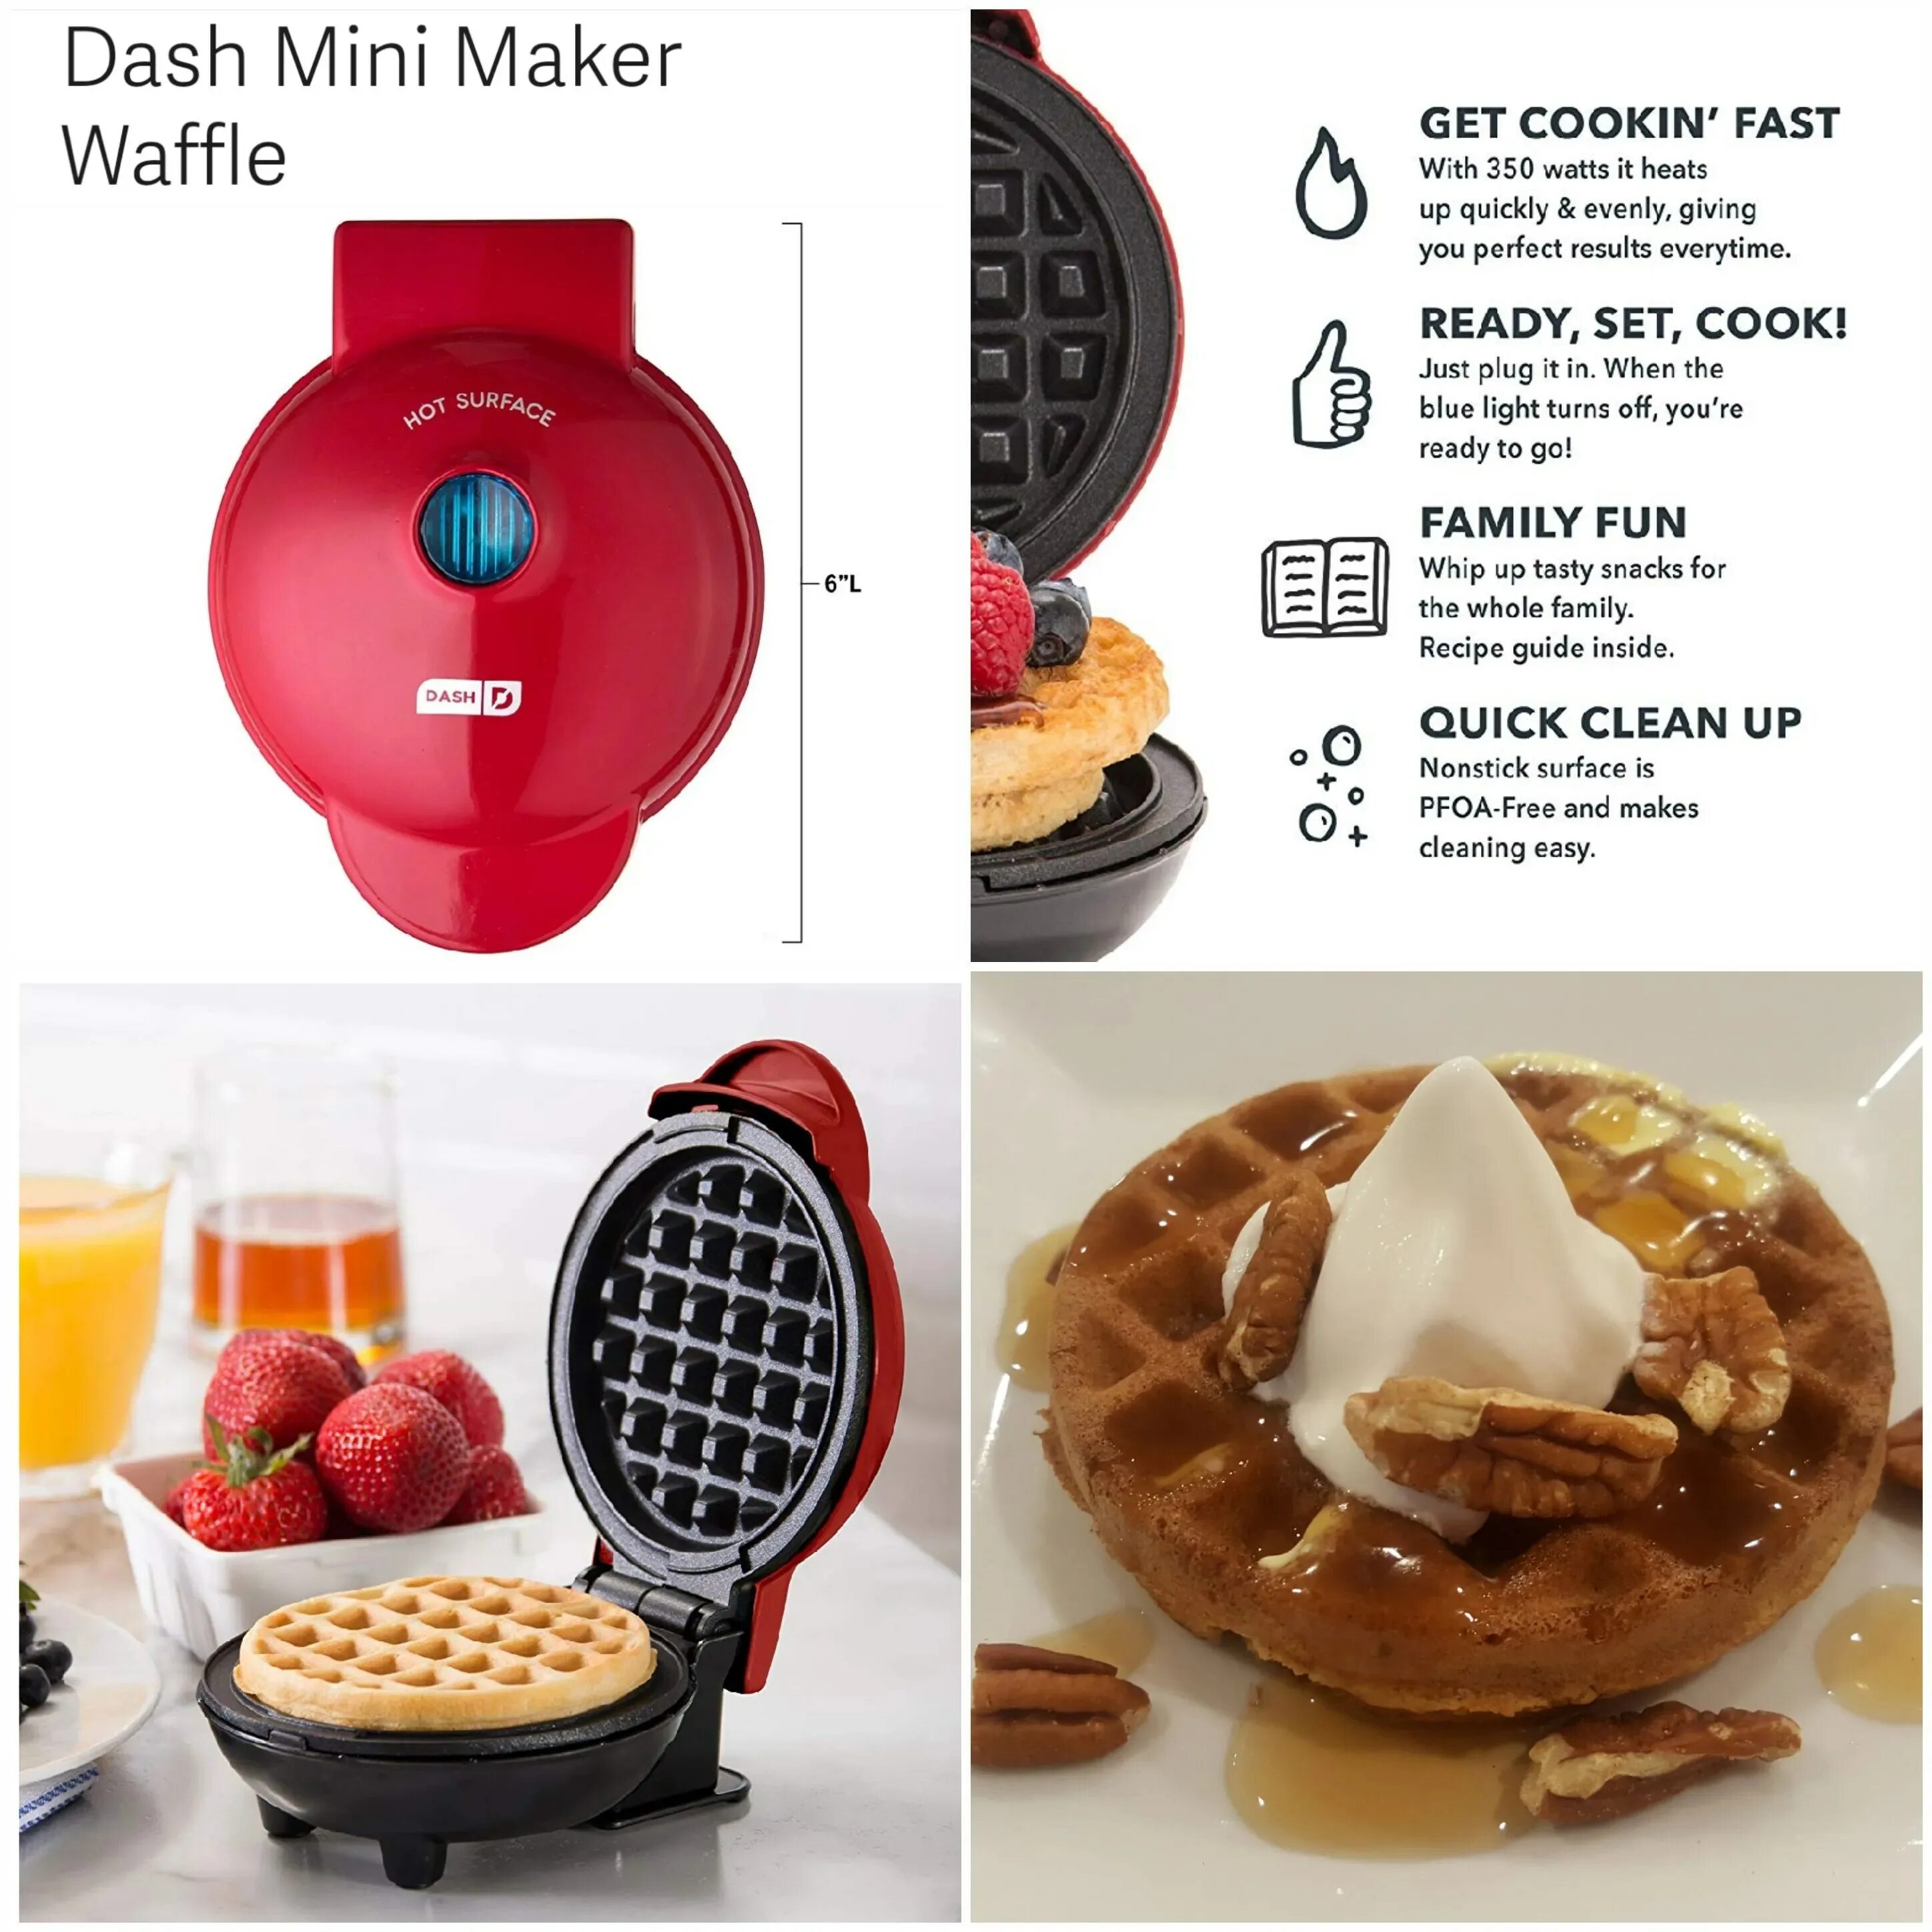 Waffle maker's. Вафельница Mini maker Waffle. Инструкция к мини вафельнице. Гексагон Waffle maker. Grogu Mini Waffle maker.